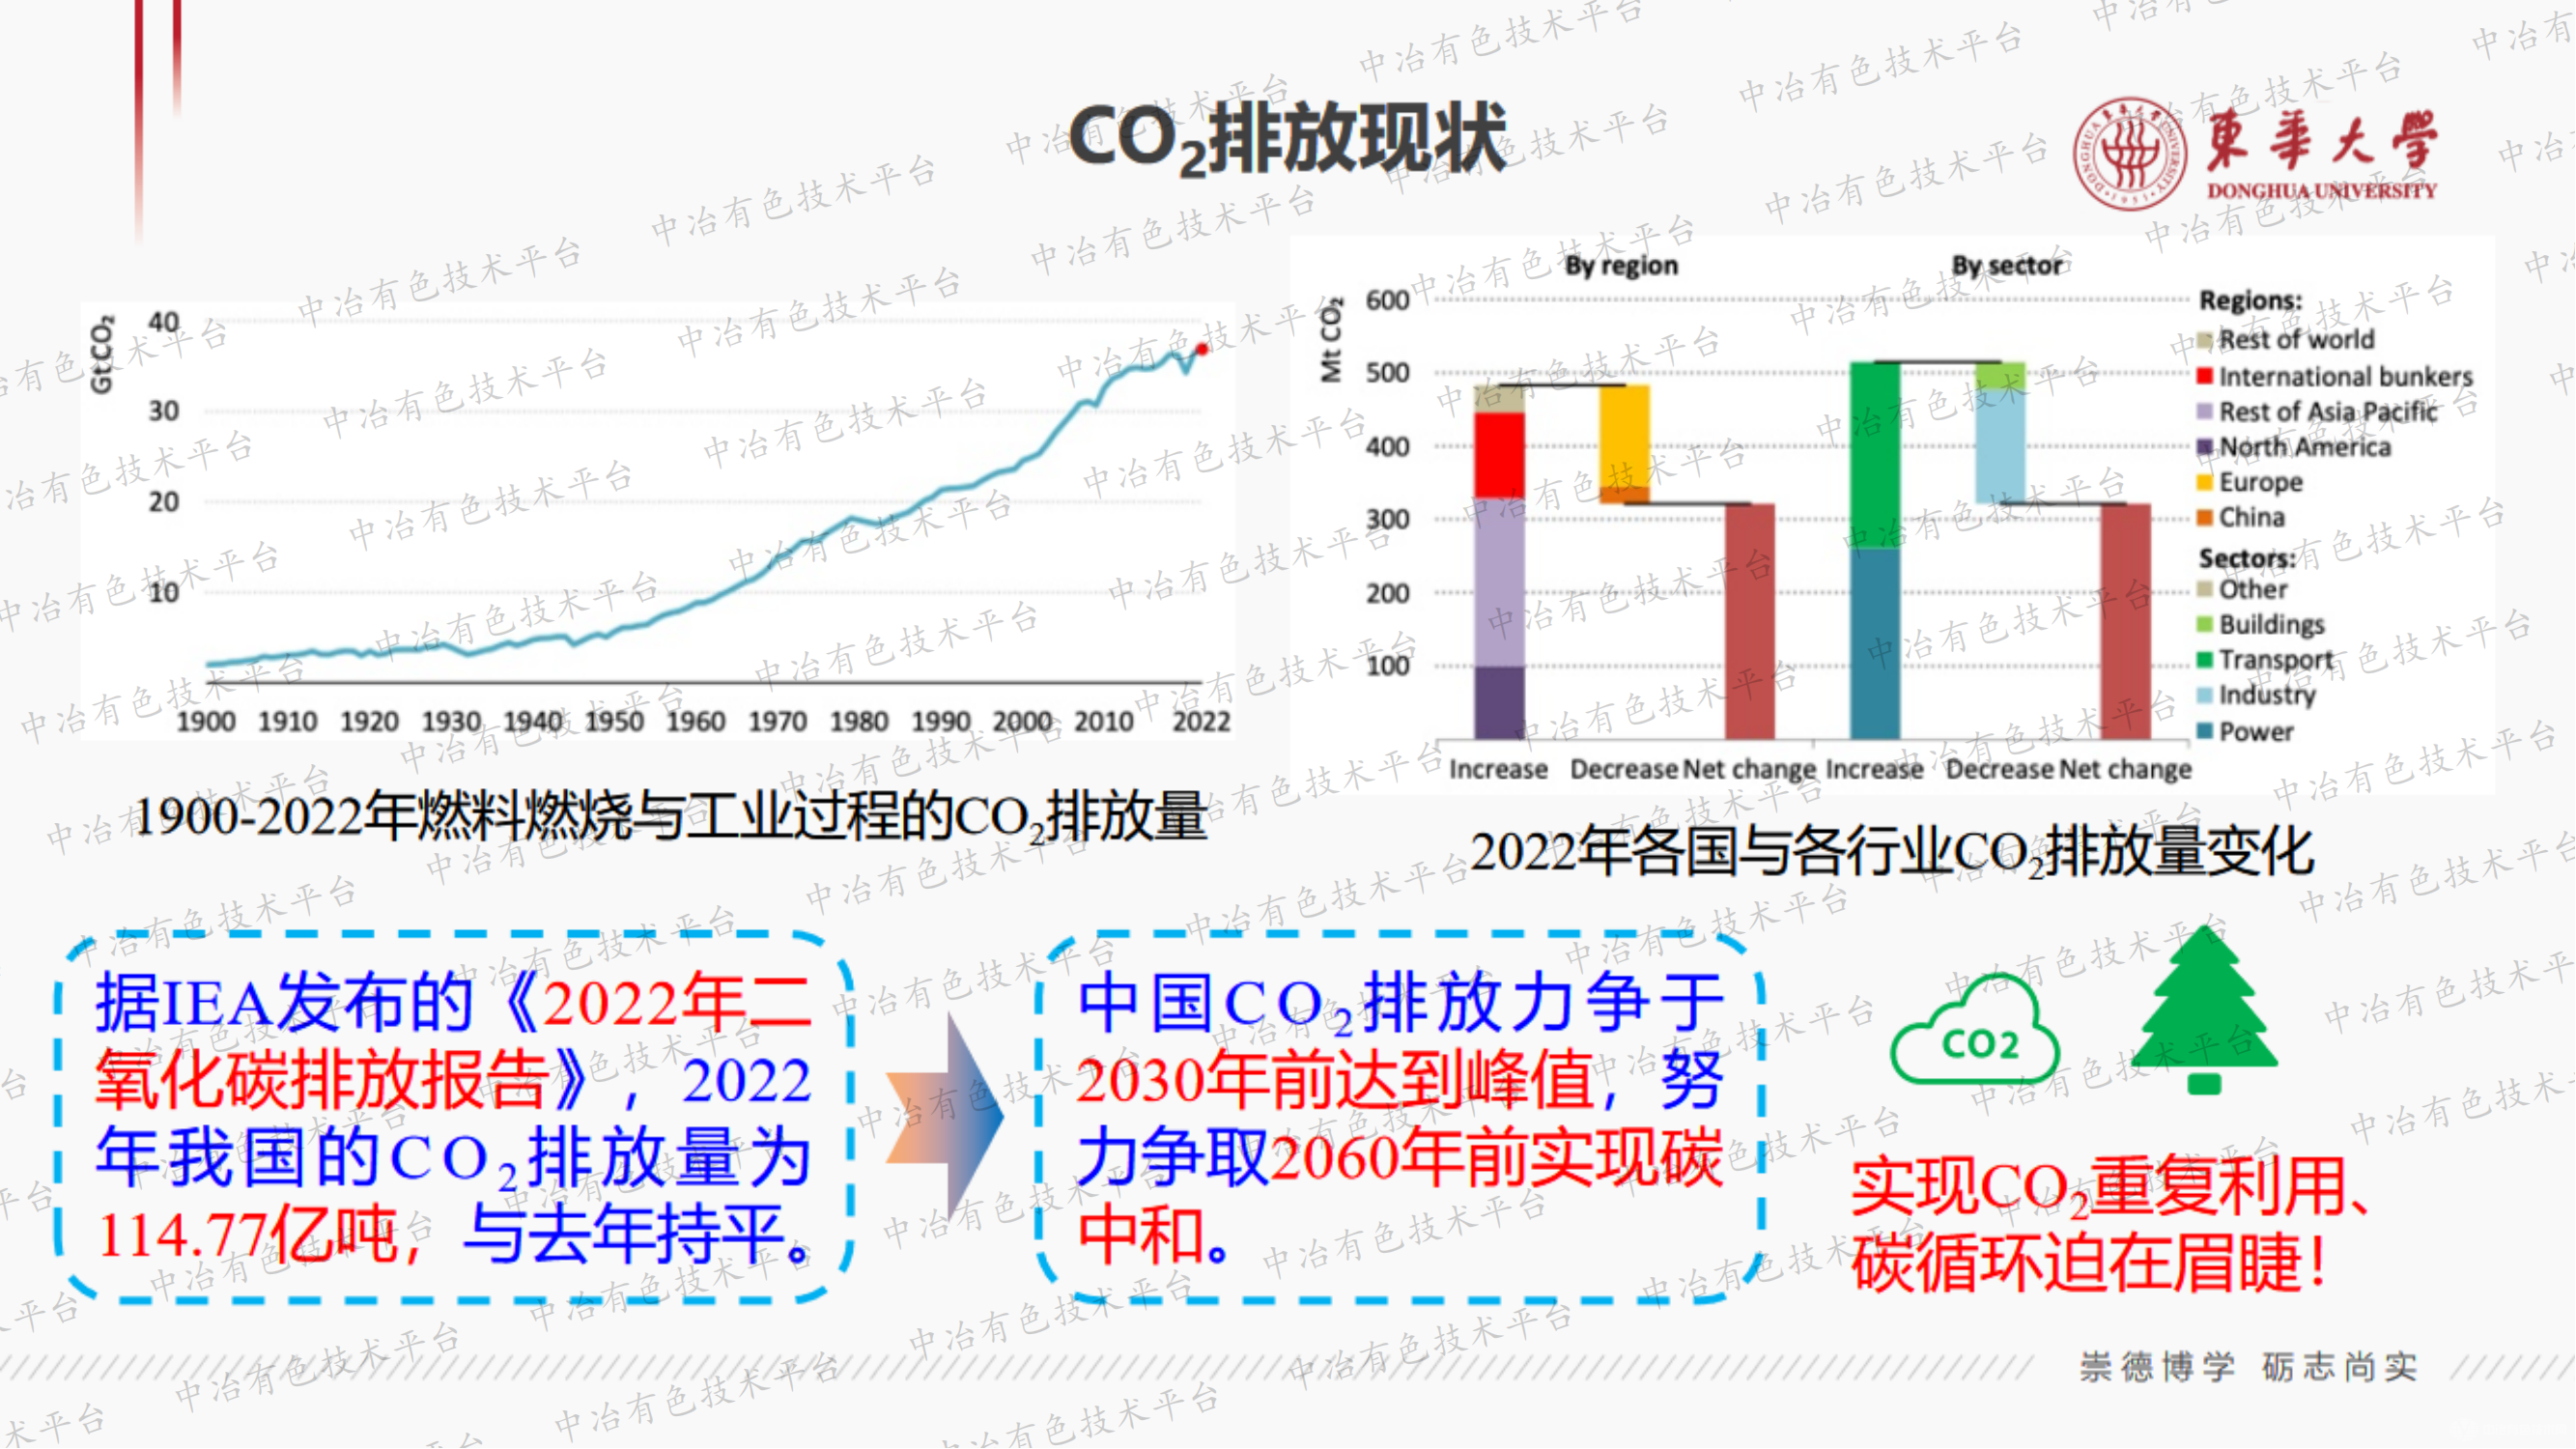 CO2资源化可行性途径分析